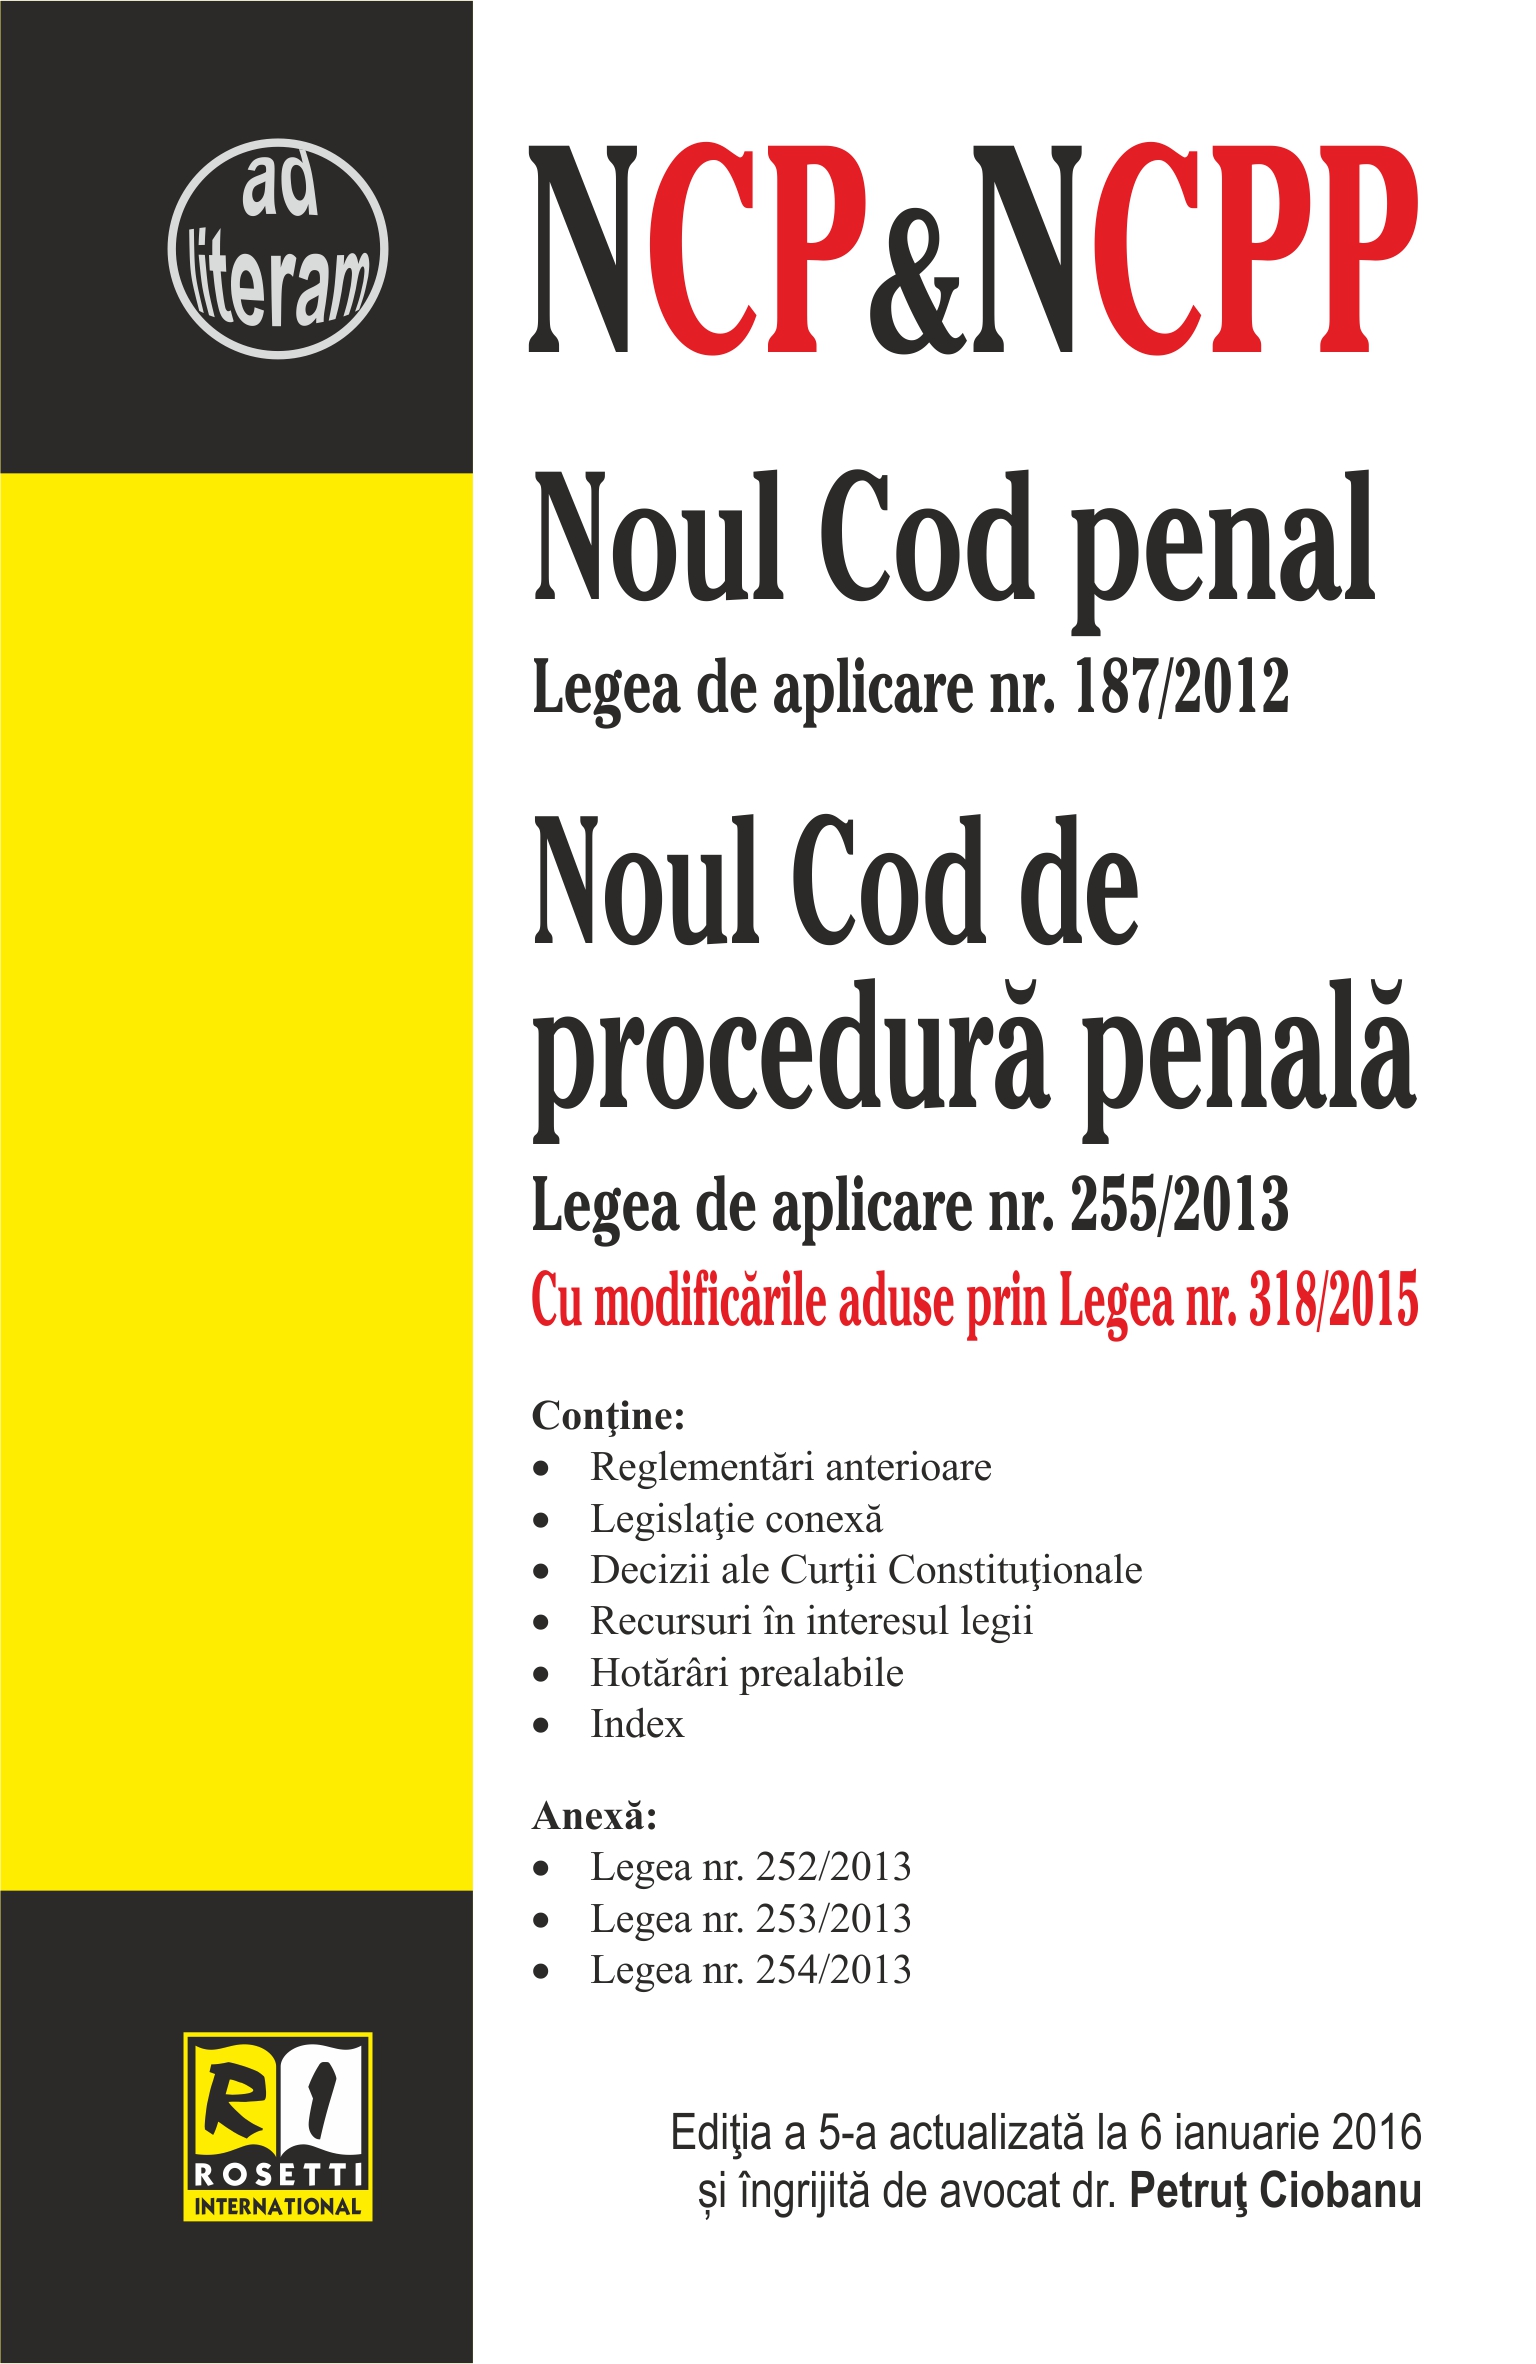 Noul Cod penal. Noul Cod de procedura penala act. 6 ianuarie 2016